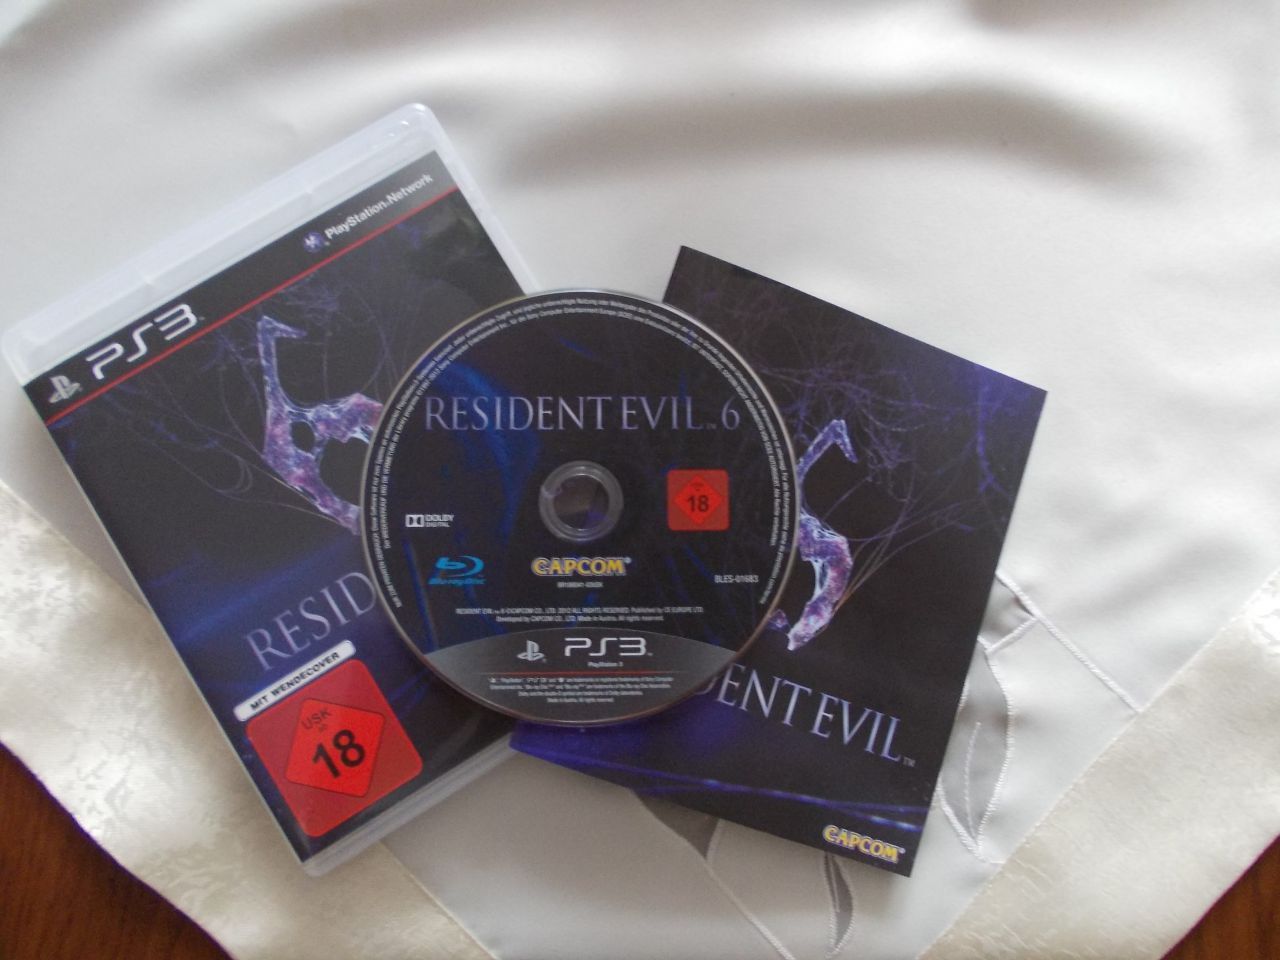 Resident Evil 6 copie PS3